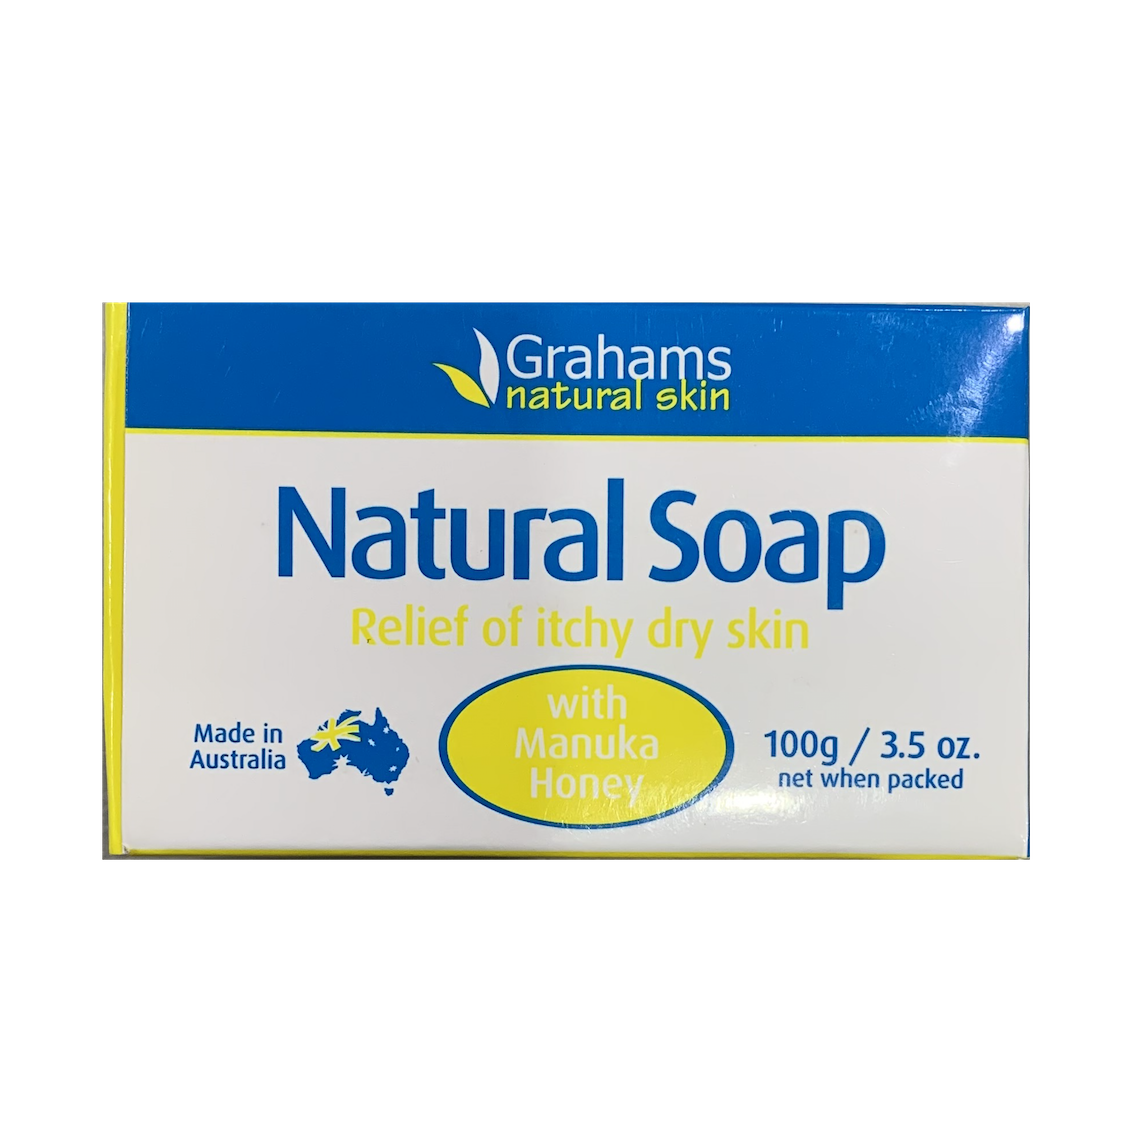 Grahams Natural Soap with Manuka Honey